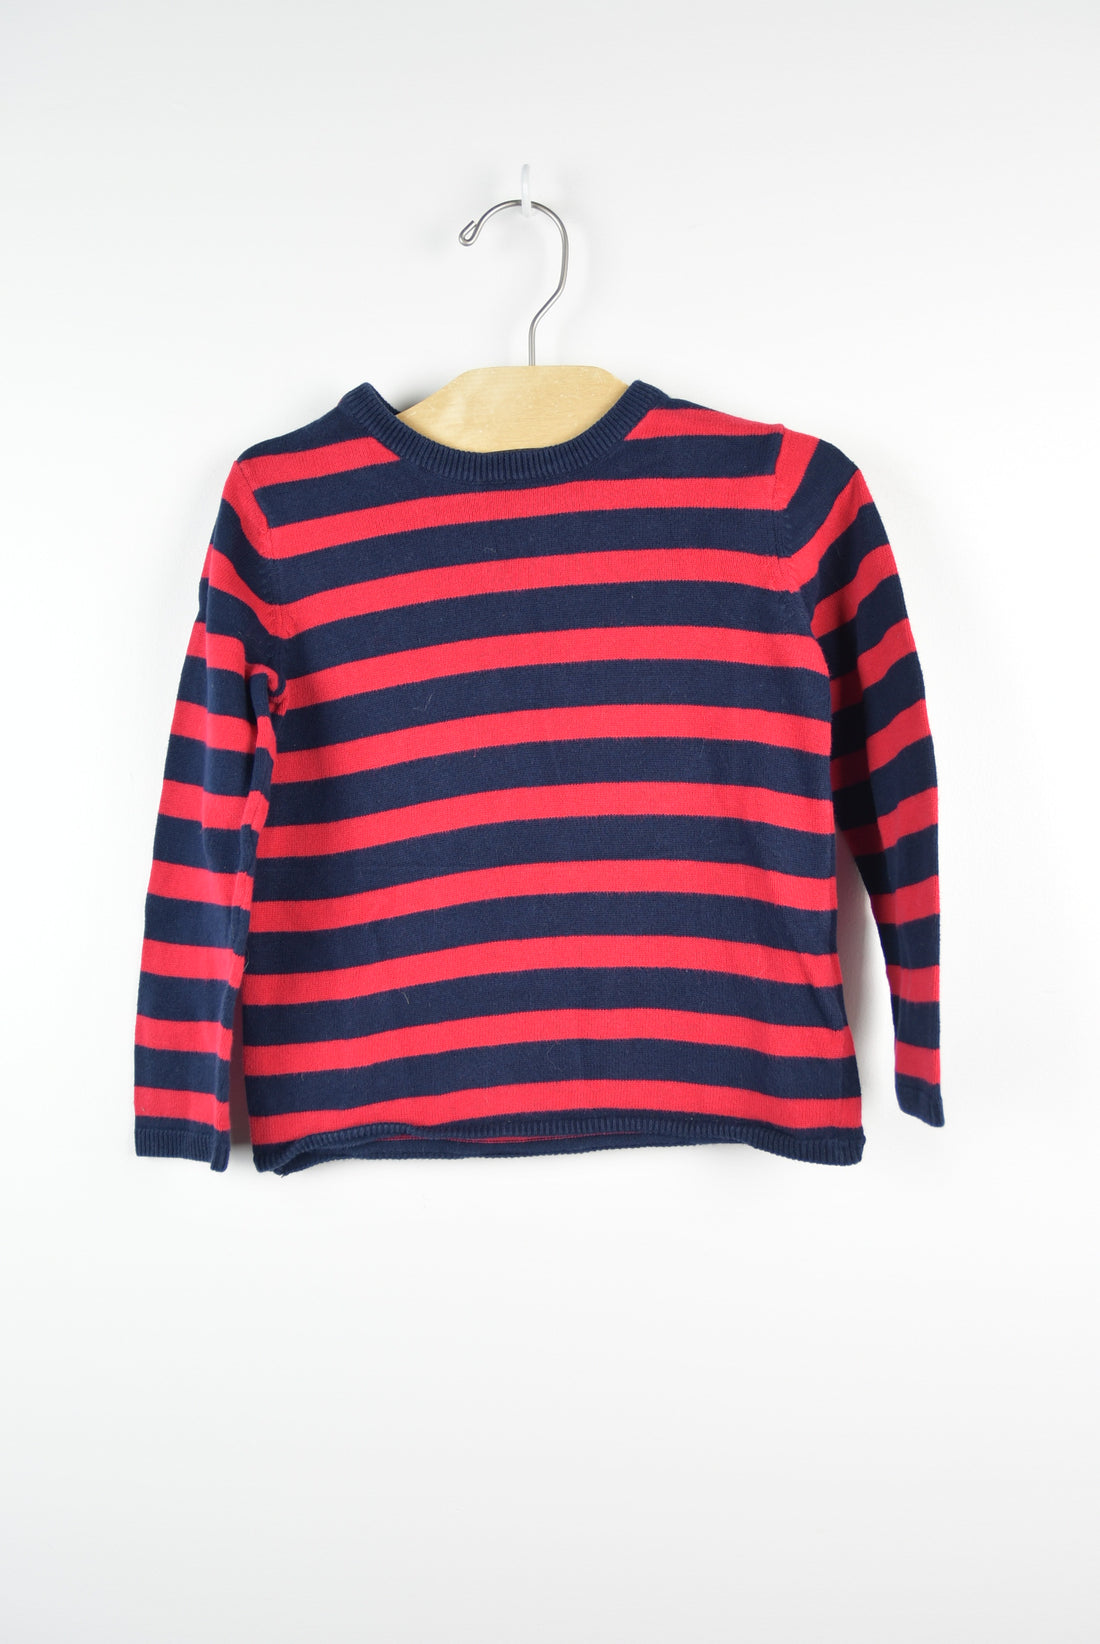 H&amp;M Striped Sweater (2-4T)